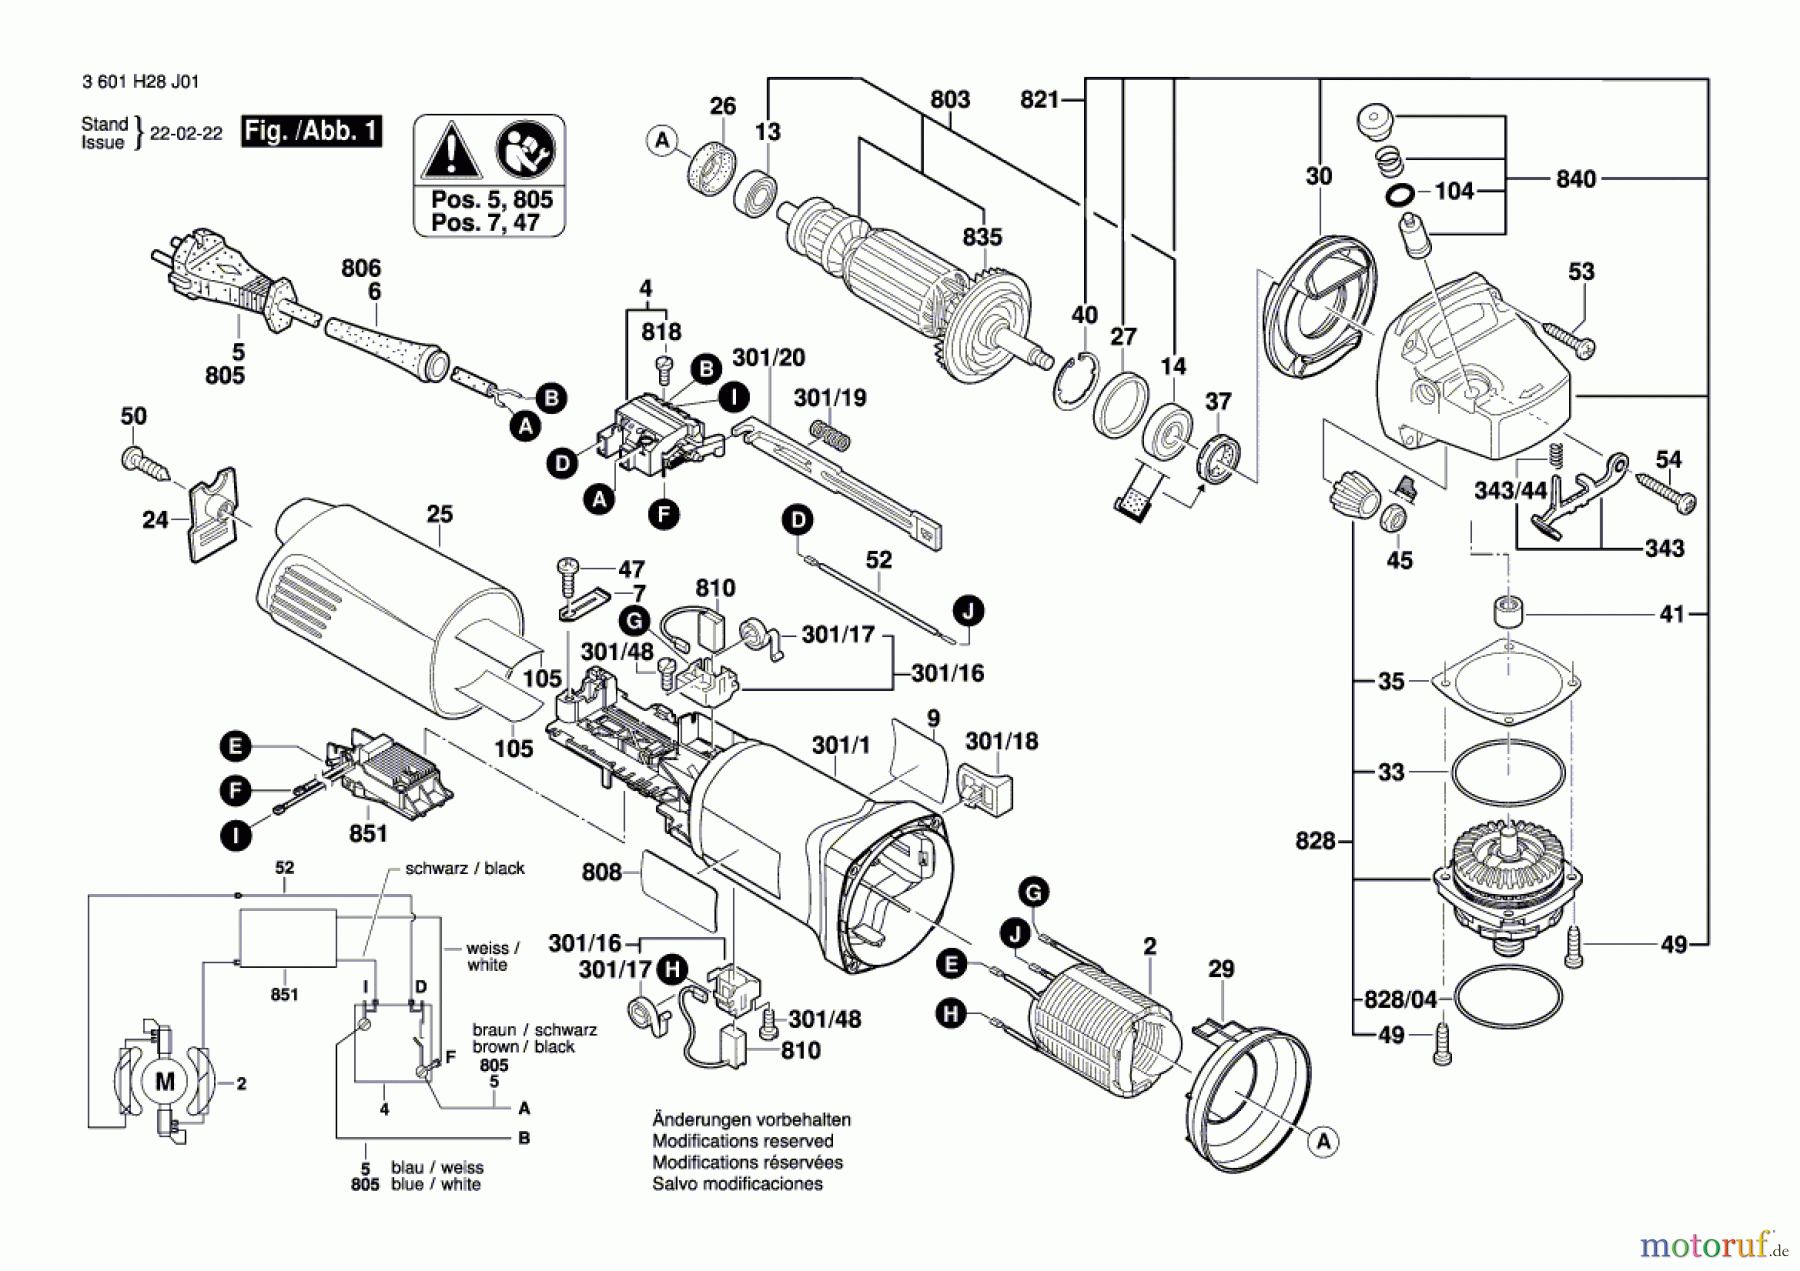  Bosch Werkzeug Winkelschleifer CG 10-125 (China) Seite 1